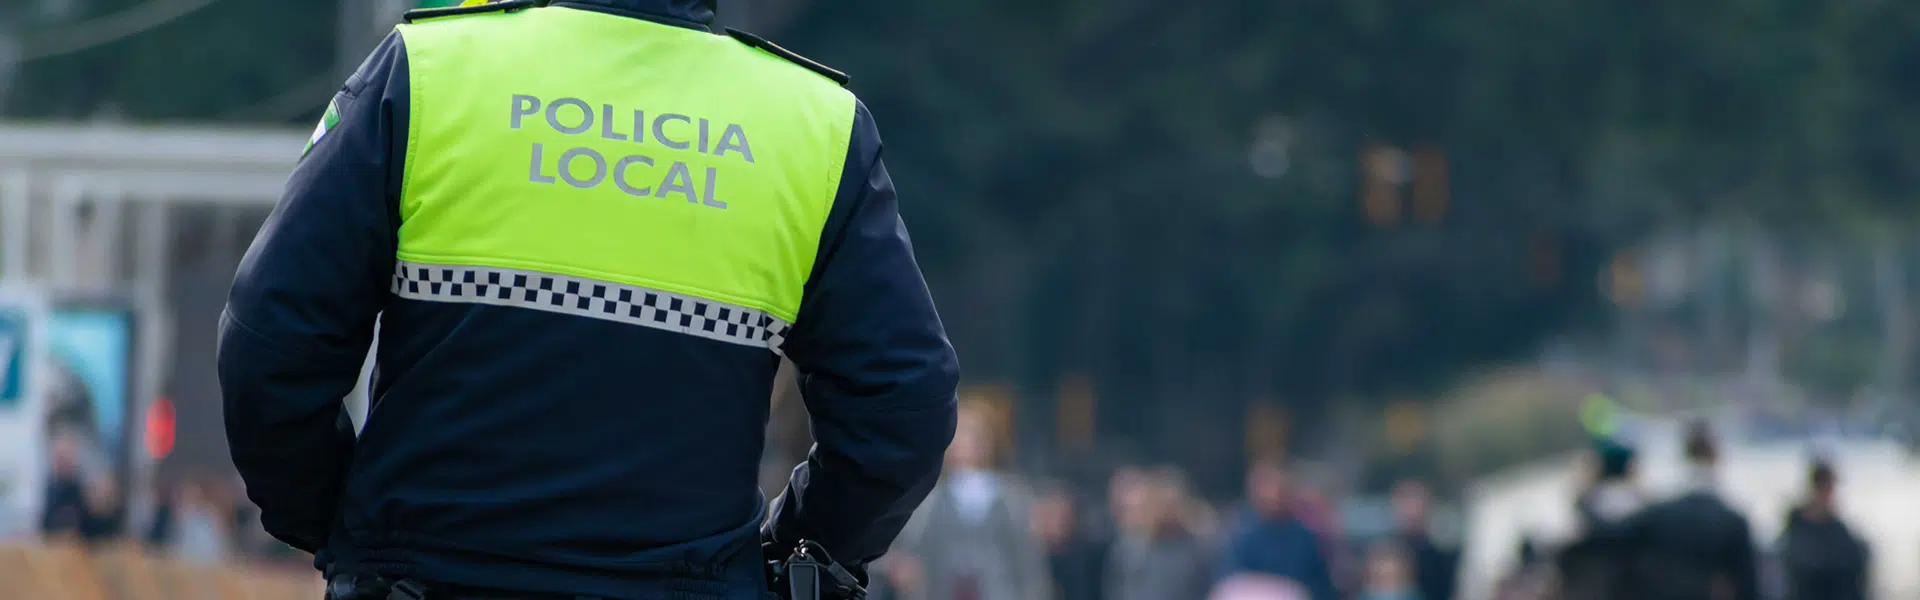 oposiciones-policia-local-extremadura